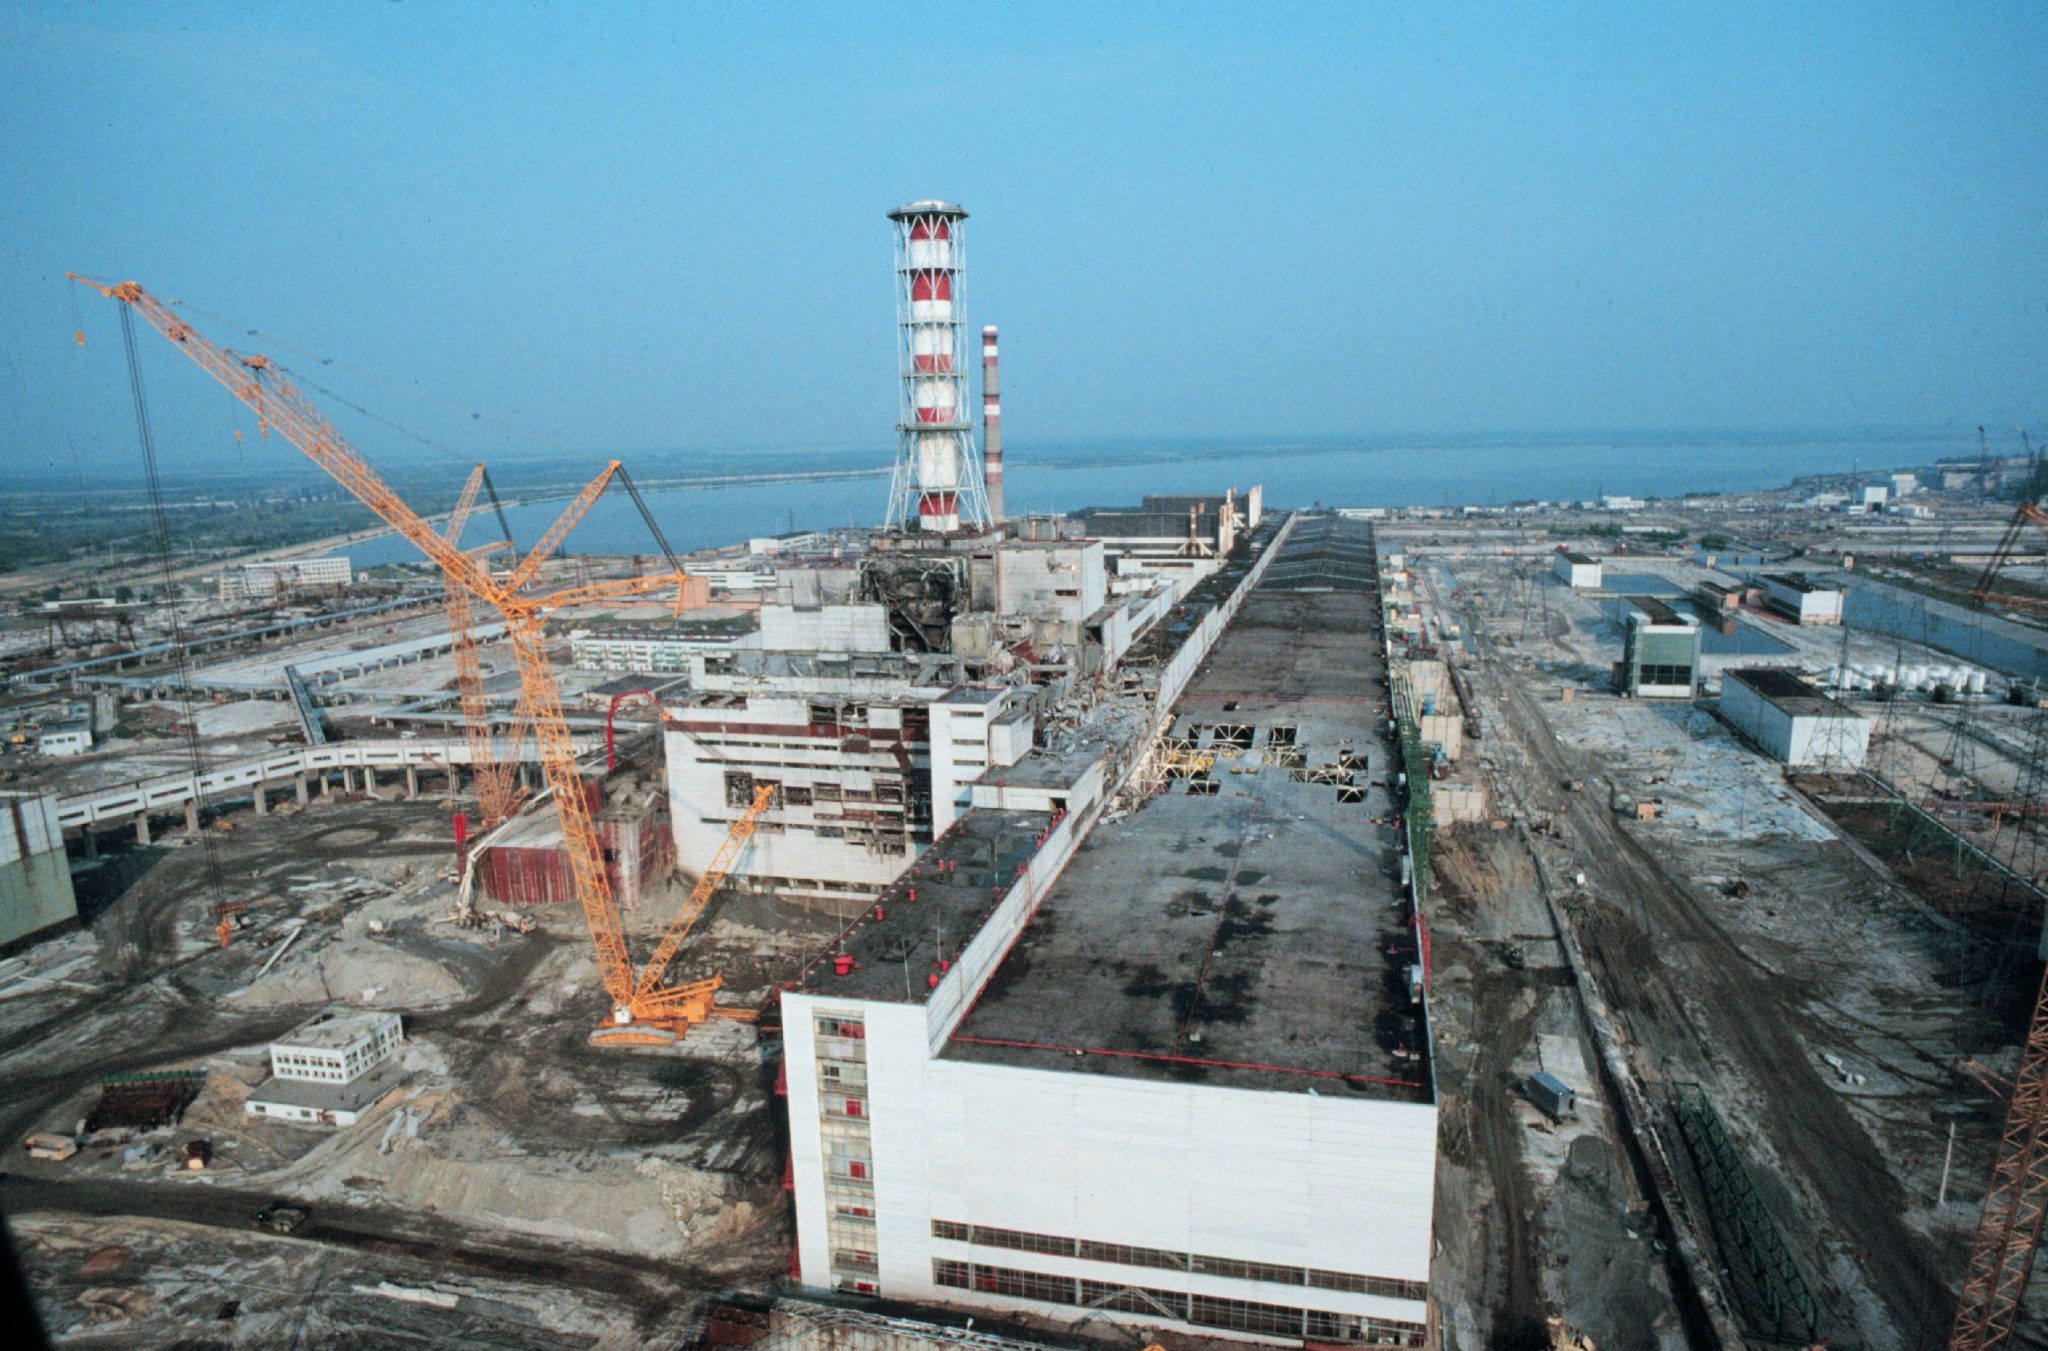 CHernobyl